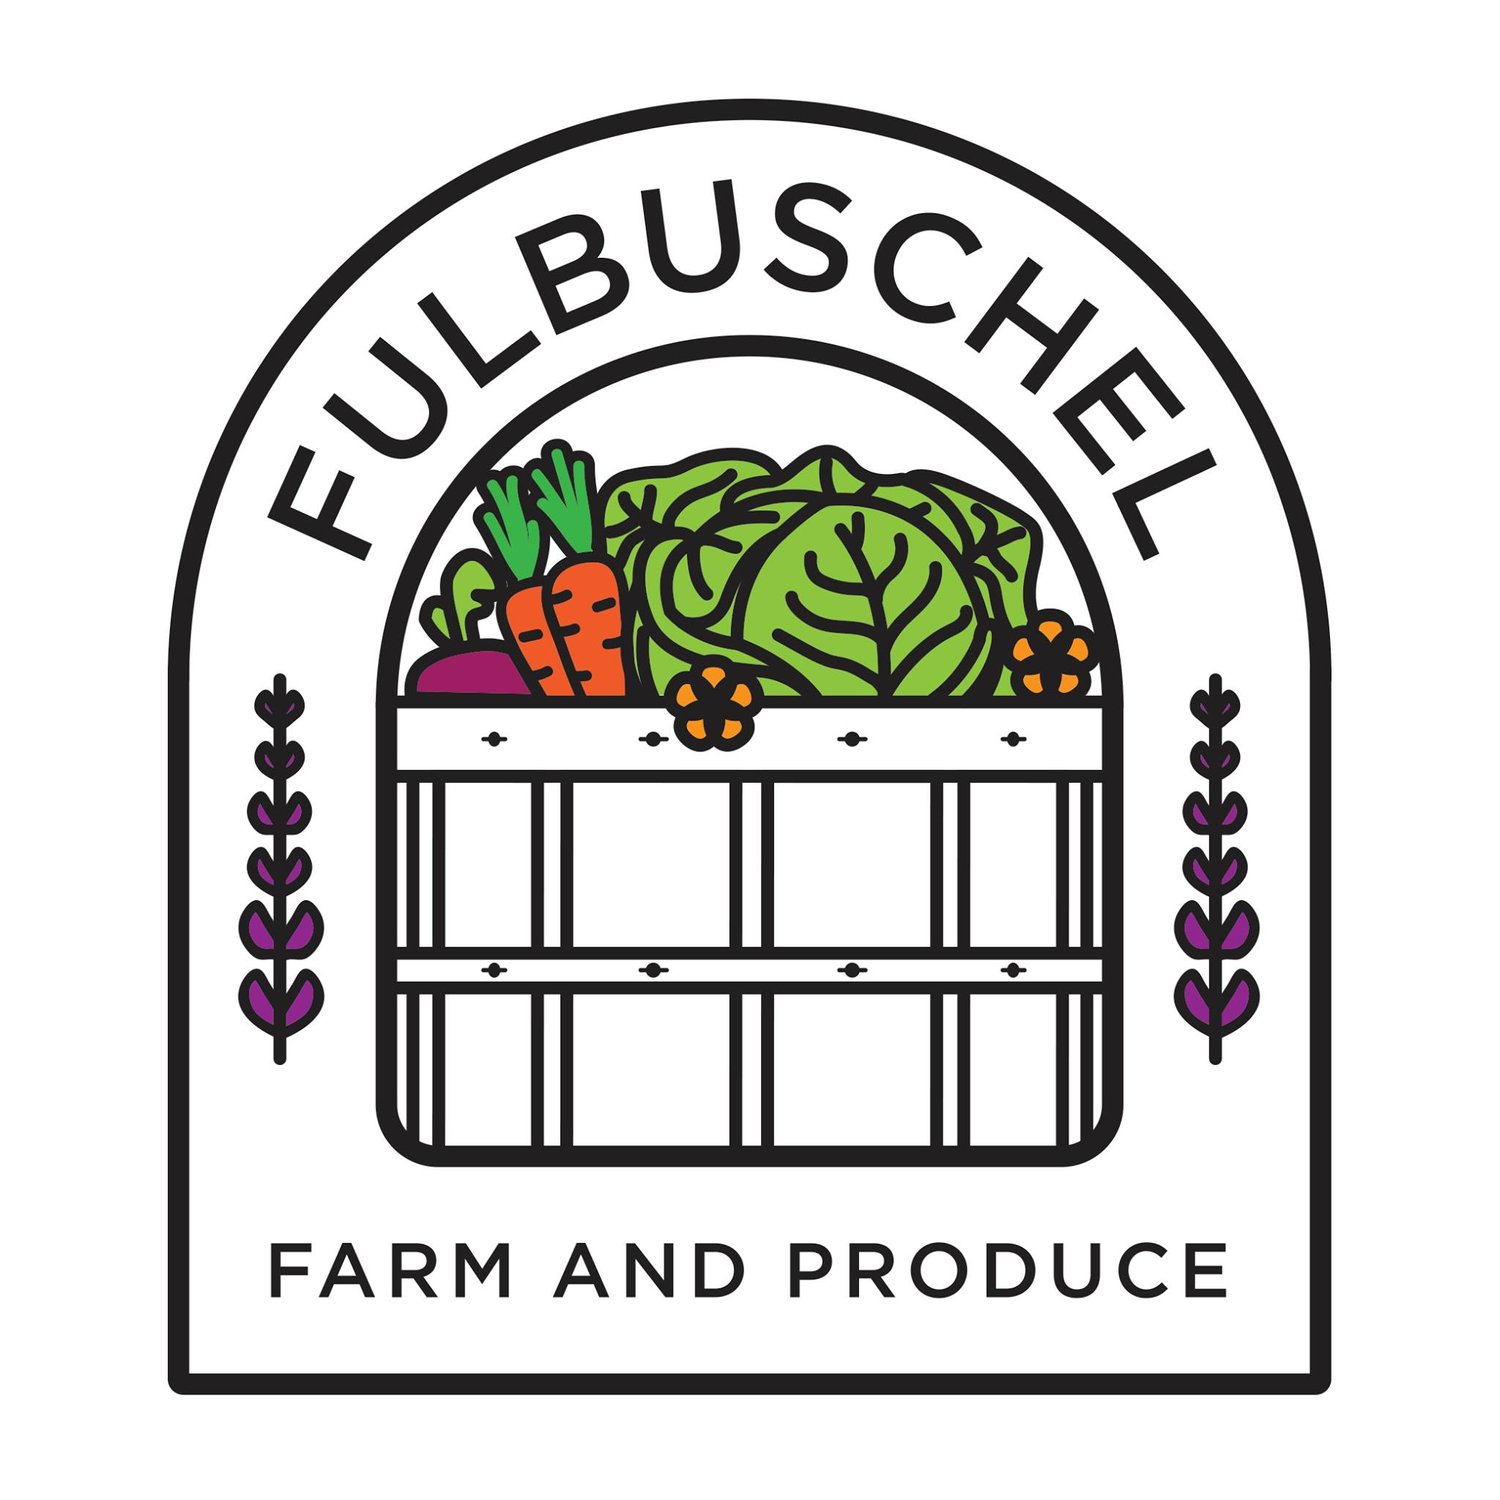 FulBuschel Farms LLC